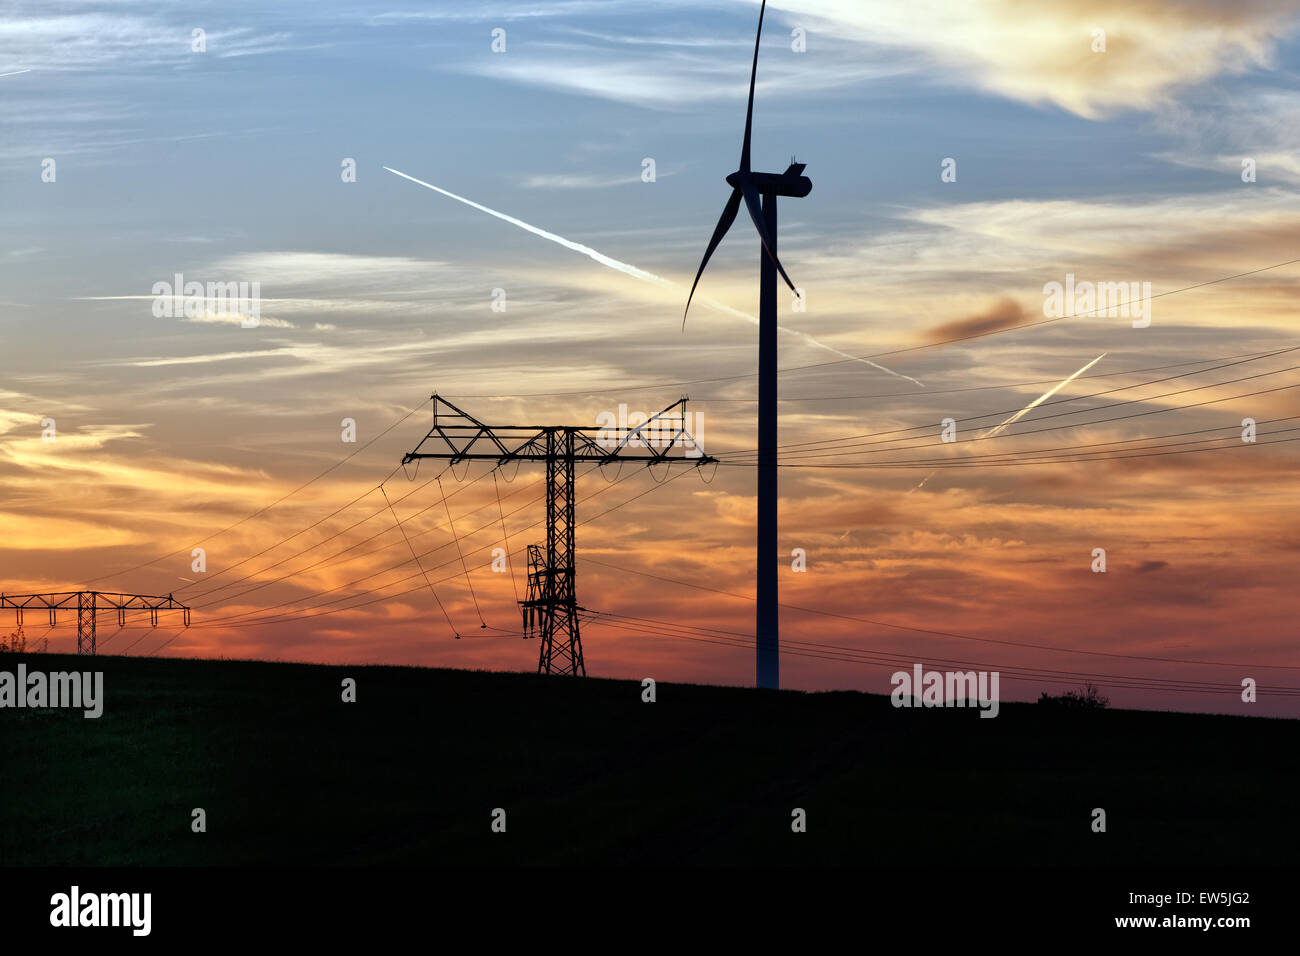 Klein-Mutz, Germany, wind turbine and Pylon of power line Stock Photo